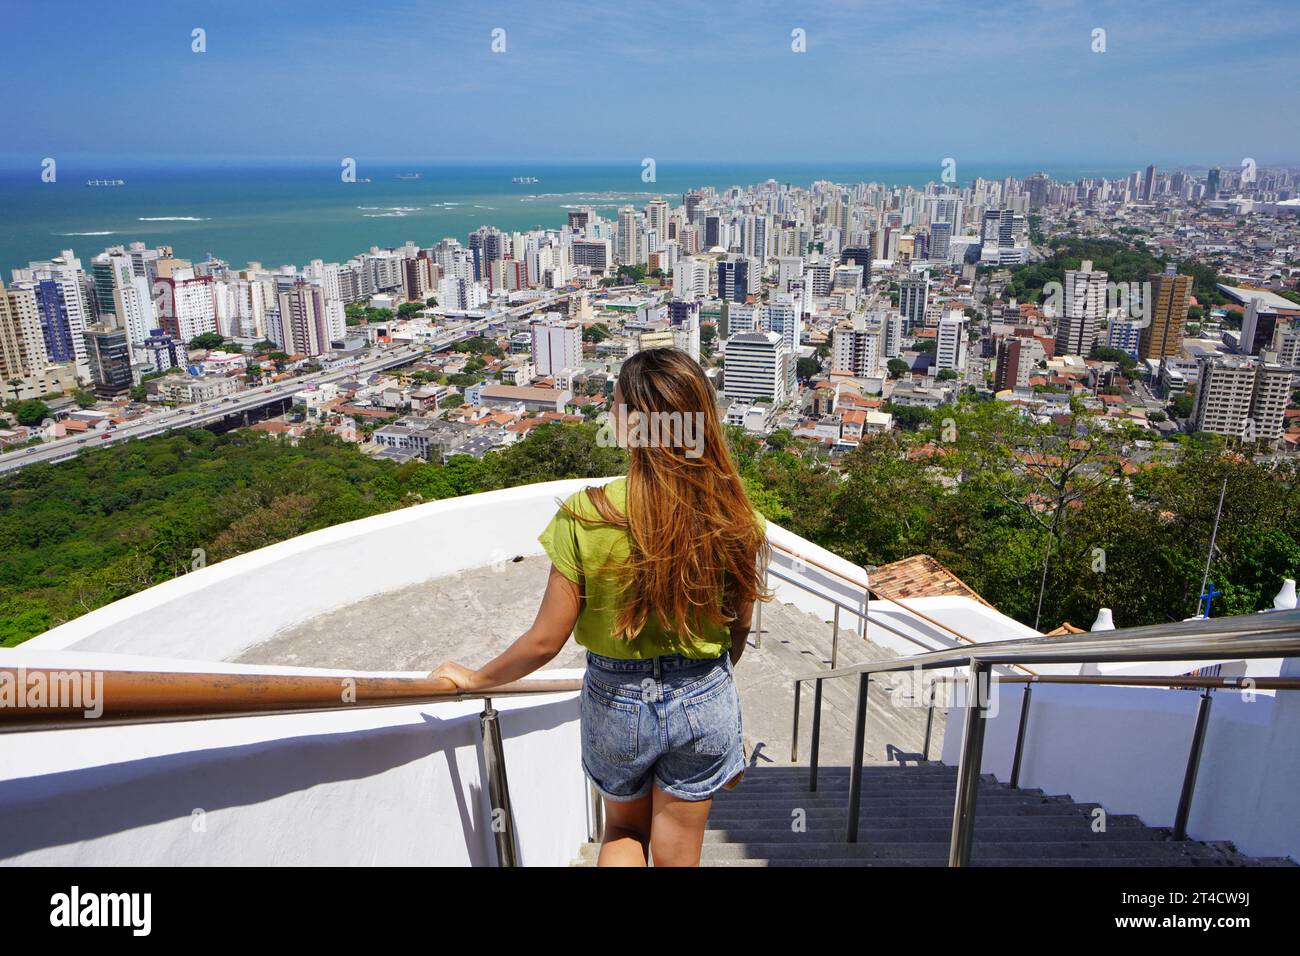 Vacanze in Brasile. Vista posteriore della bellissima ragazza della moda che si gode la vista della regione metropolitana di Vitoria, Espirito Santo, Brasile. Foto Stock